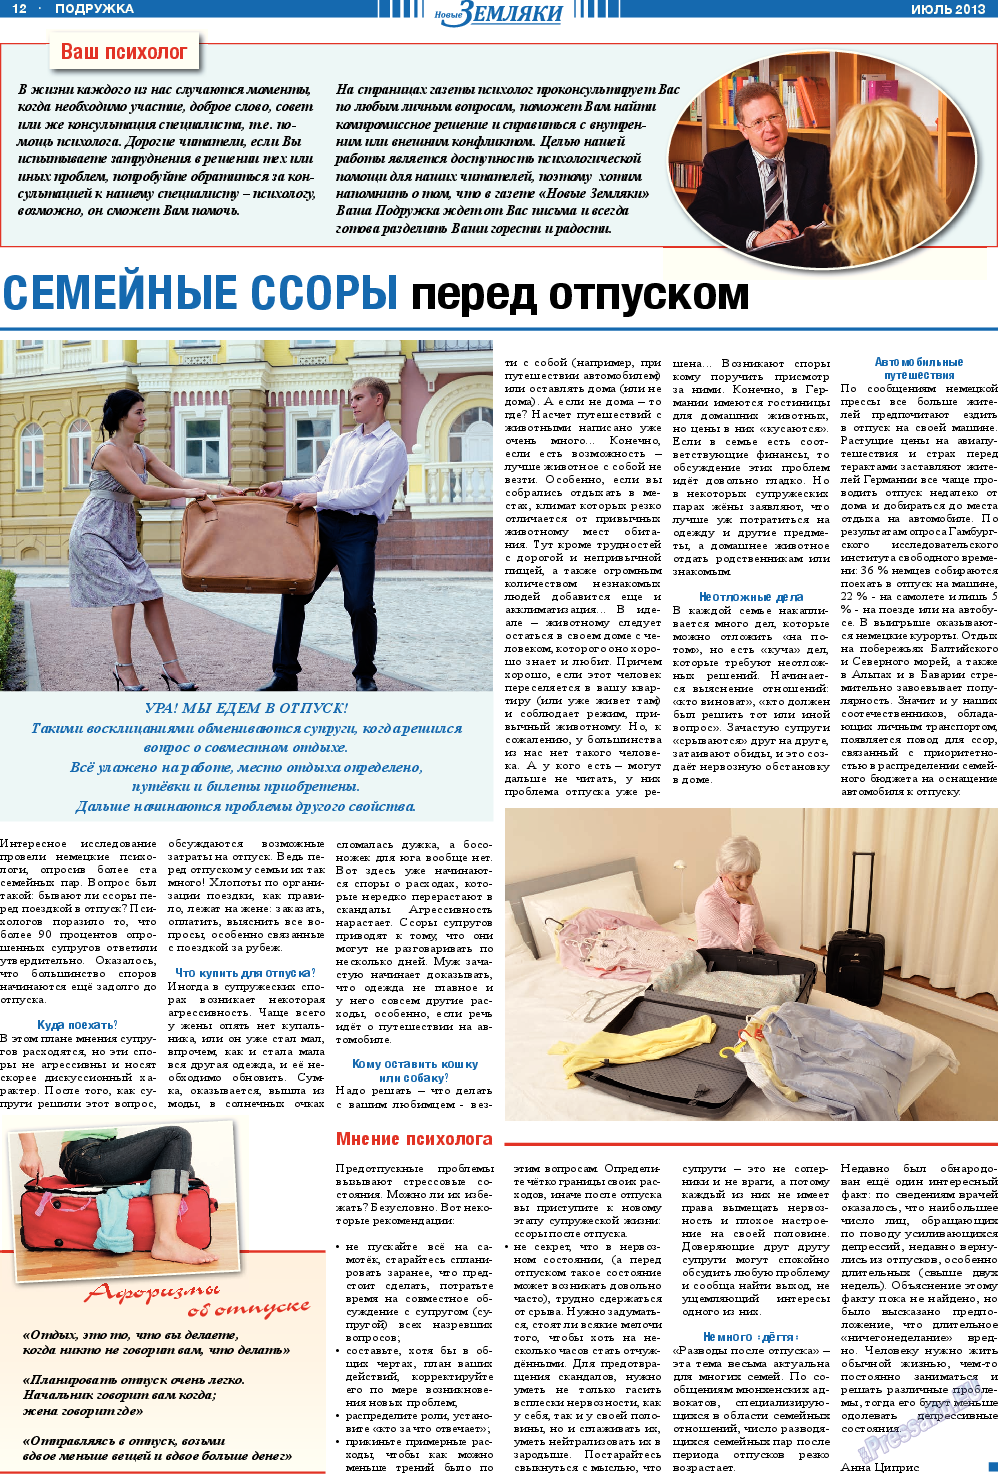 Новые Земляки, газета. 2013 №7 стр.12